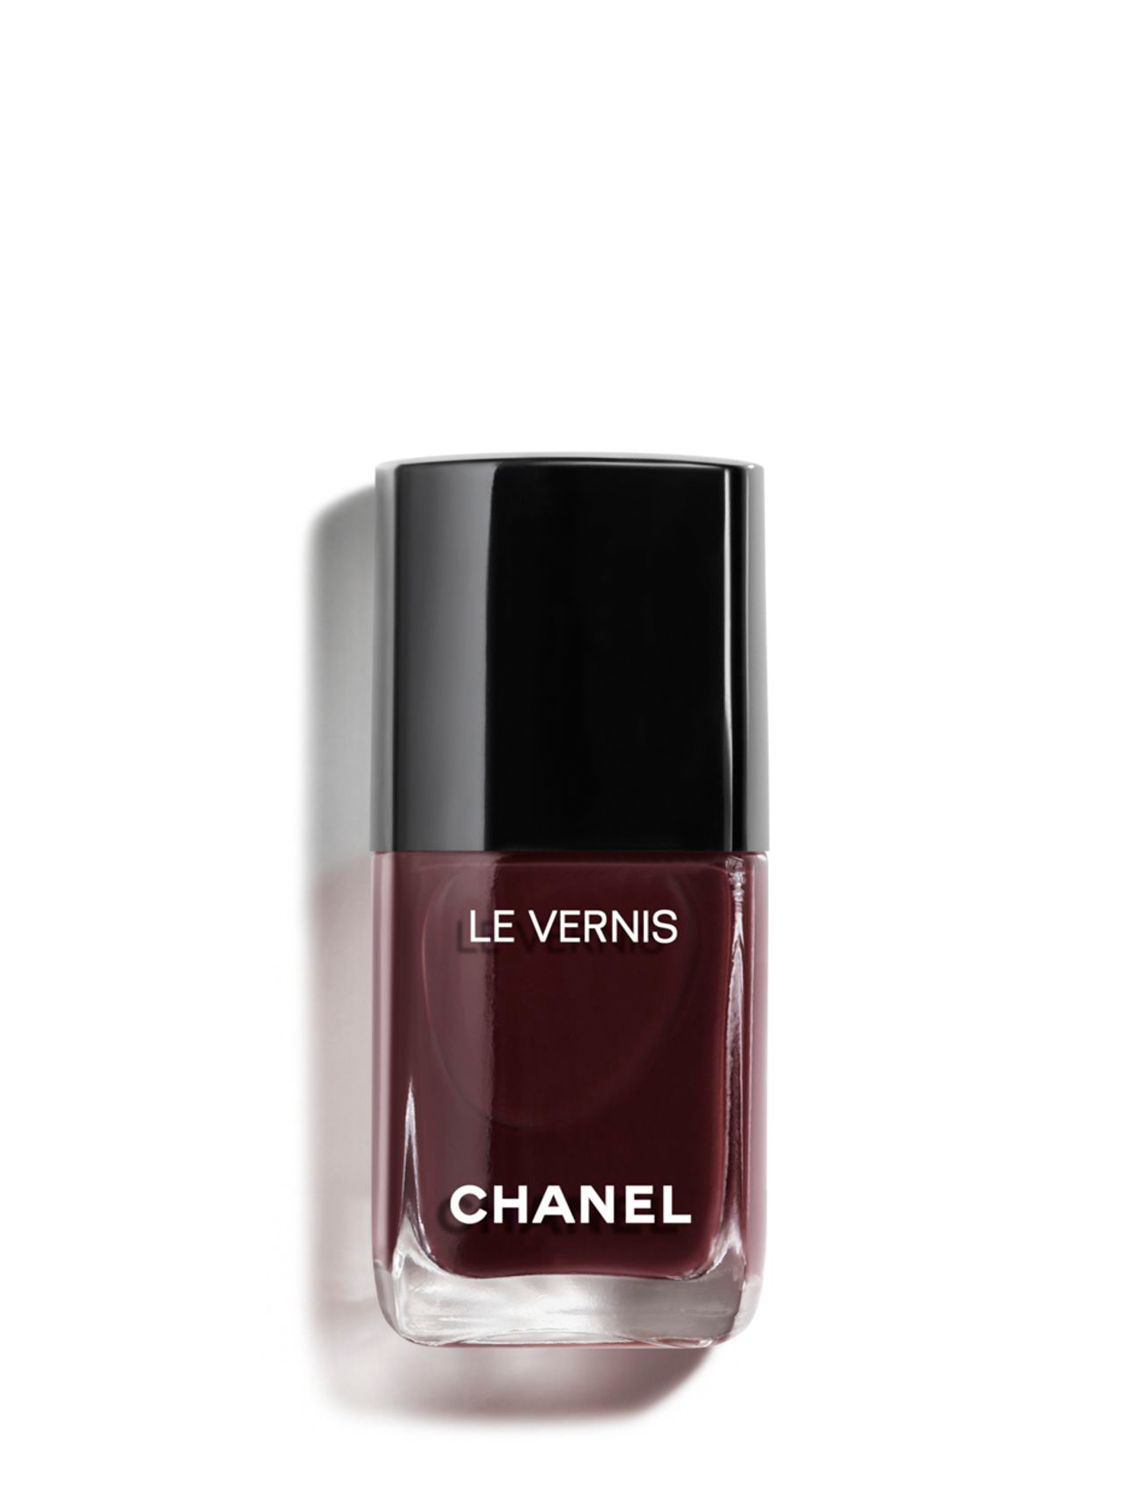 CHANEL Le Vernis ~ Longwear Nail Colour